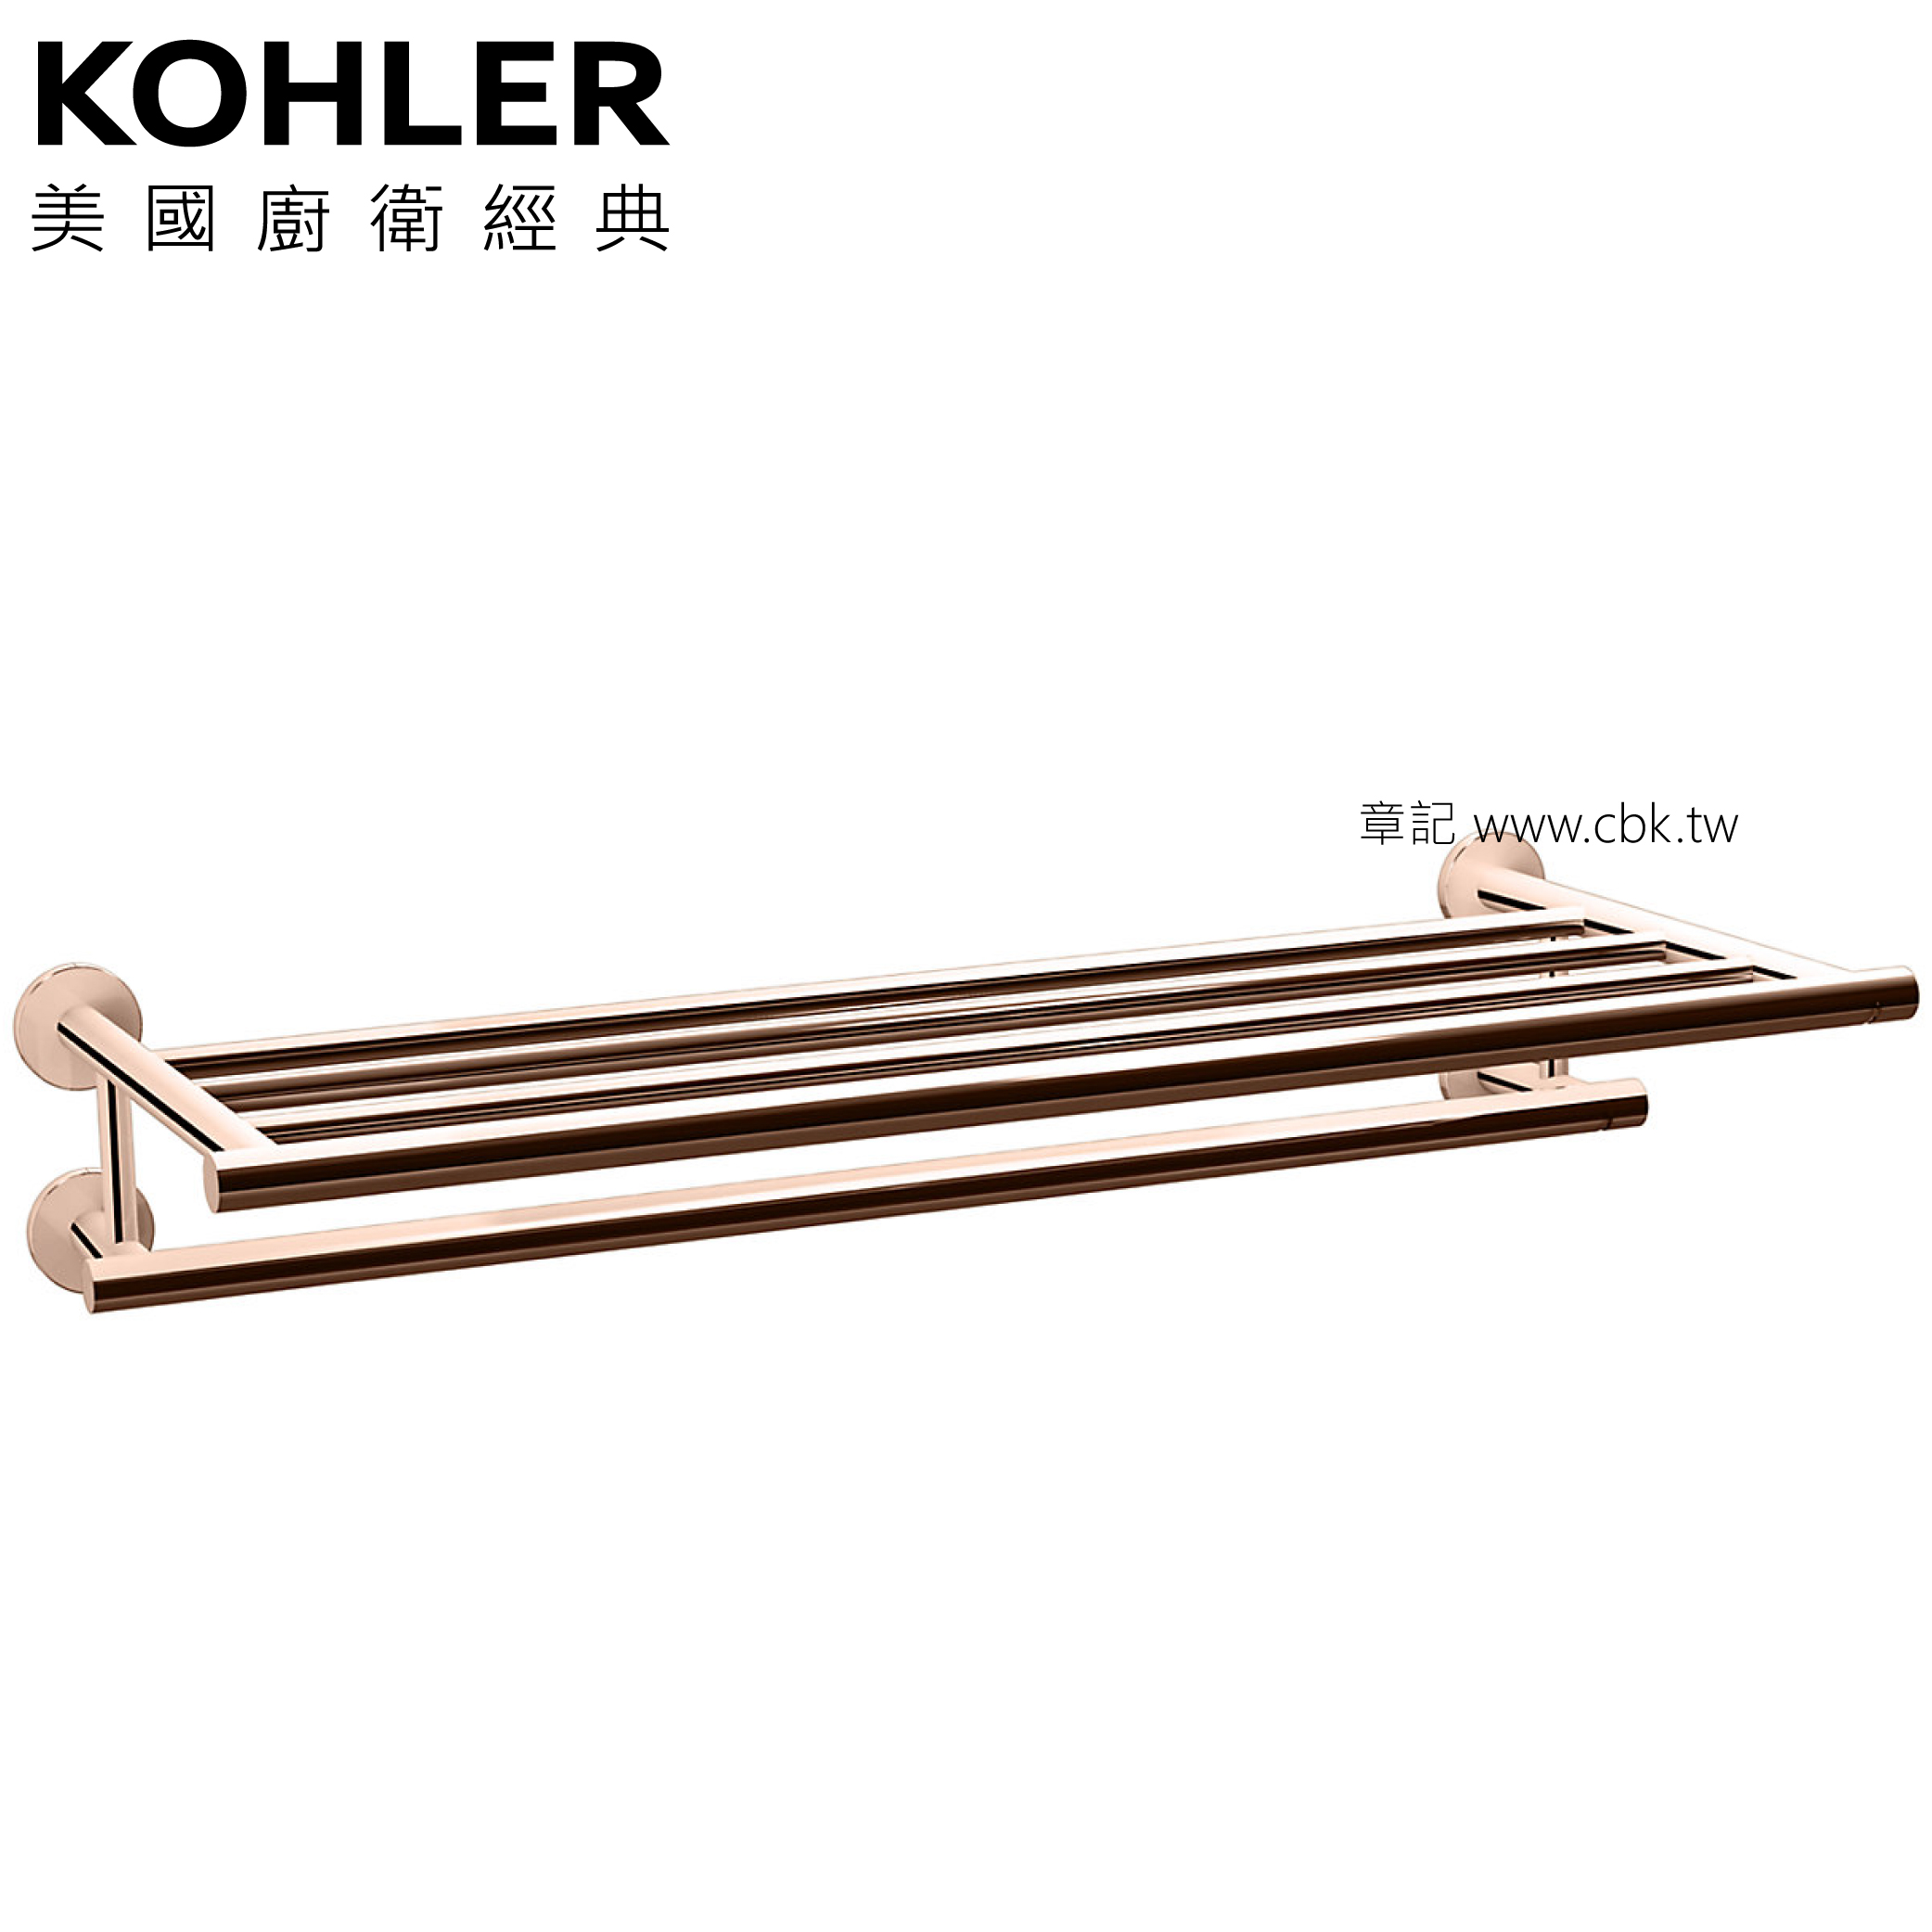 KOHLER Stillness 雙層毛巾架(玫瑰金) K-14397T-RGD  |浴室配件|毛巾置衣架